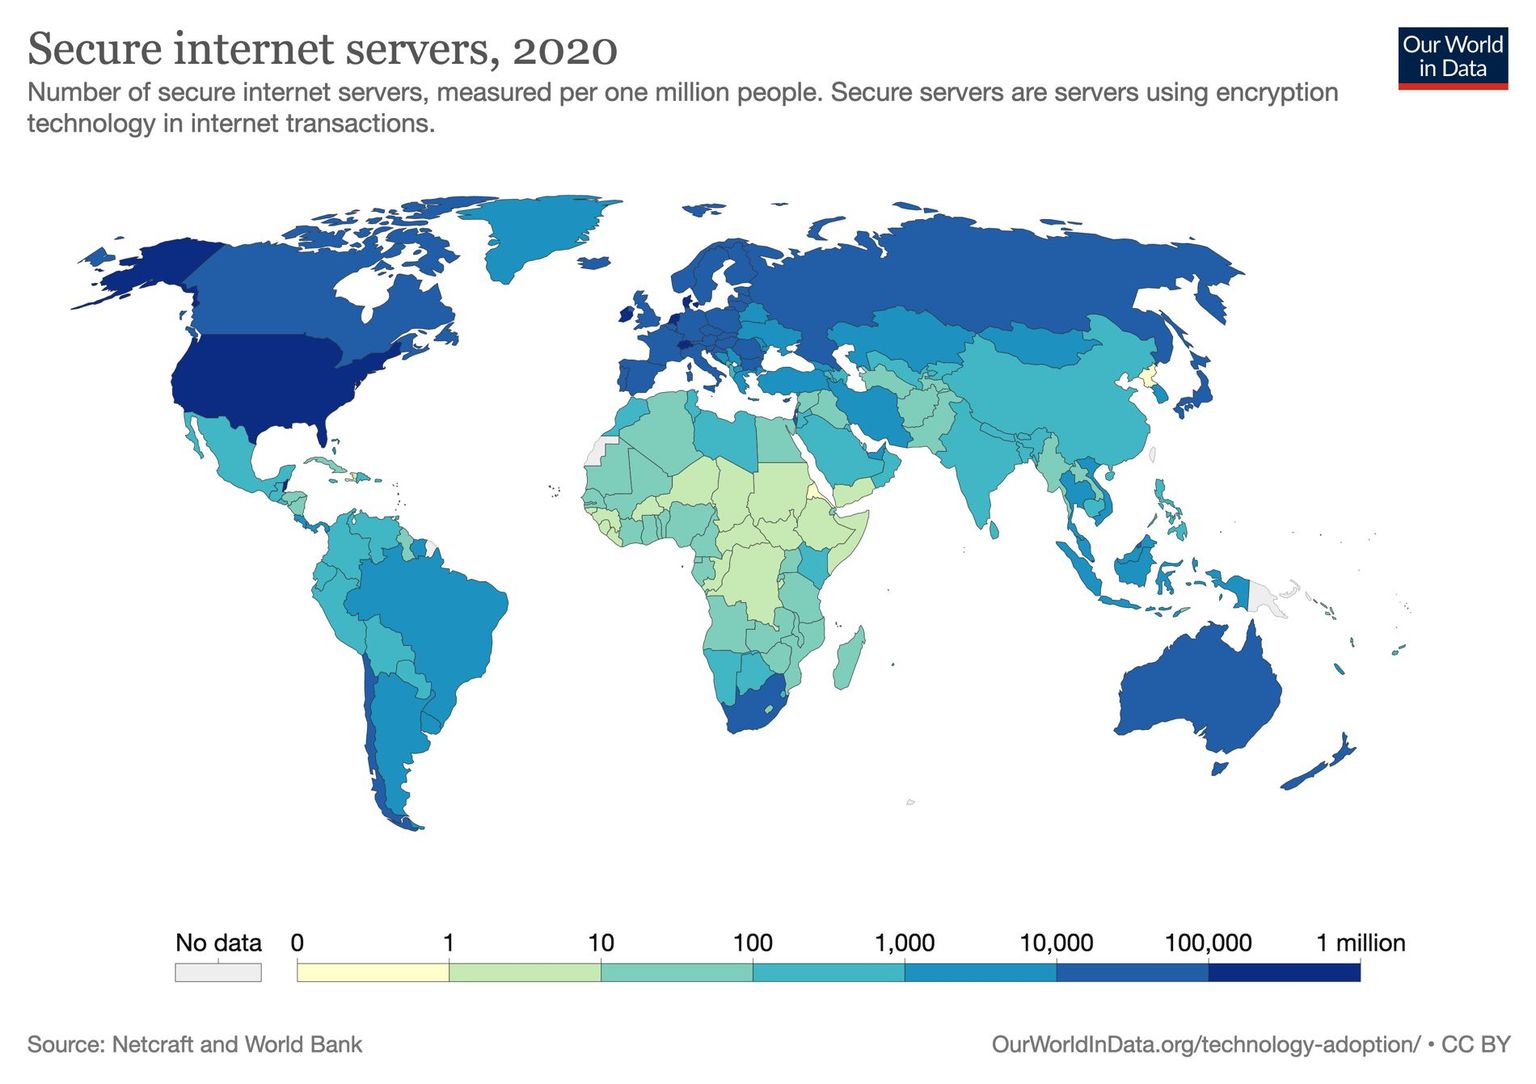 Secure internet servers per 1 million people, 2020